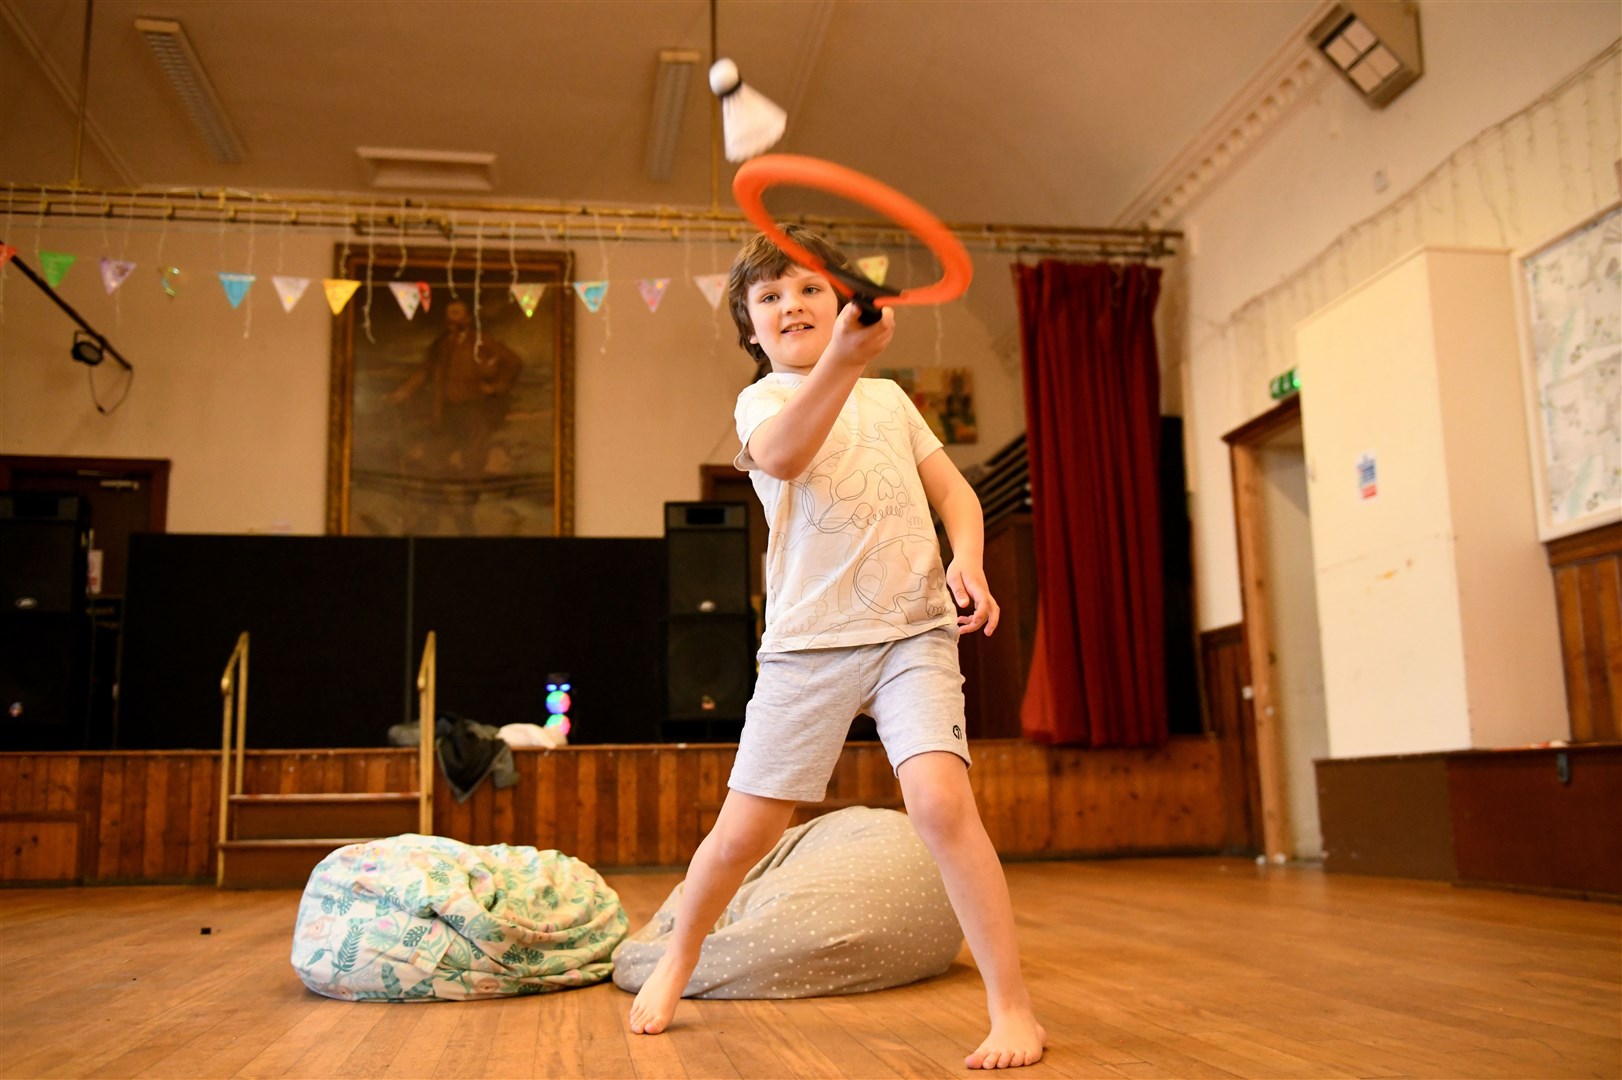 Ben Macallister playing badminton. Picture: James Mackenzie